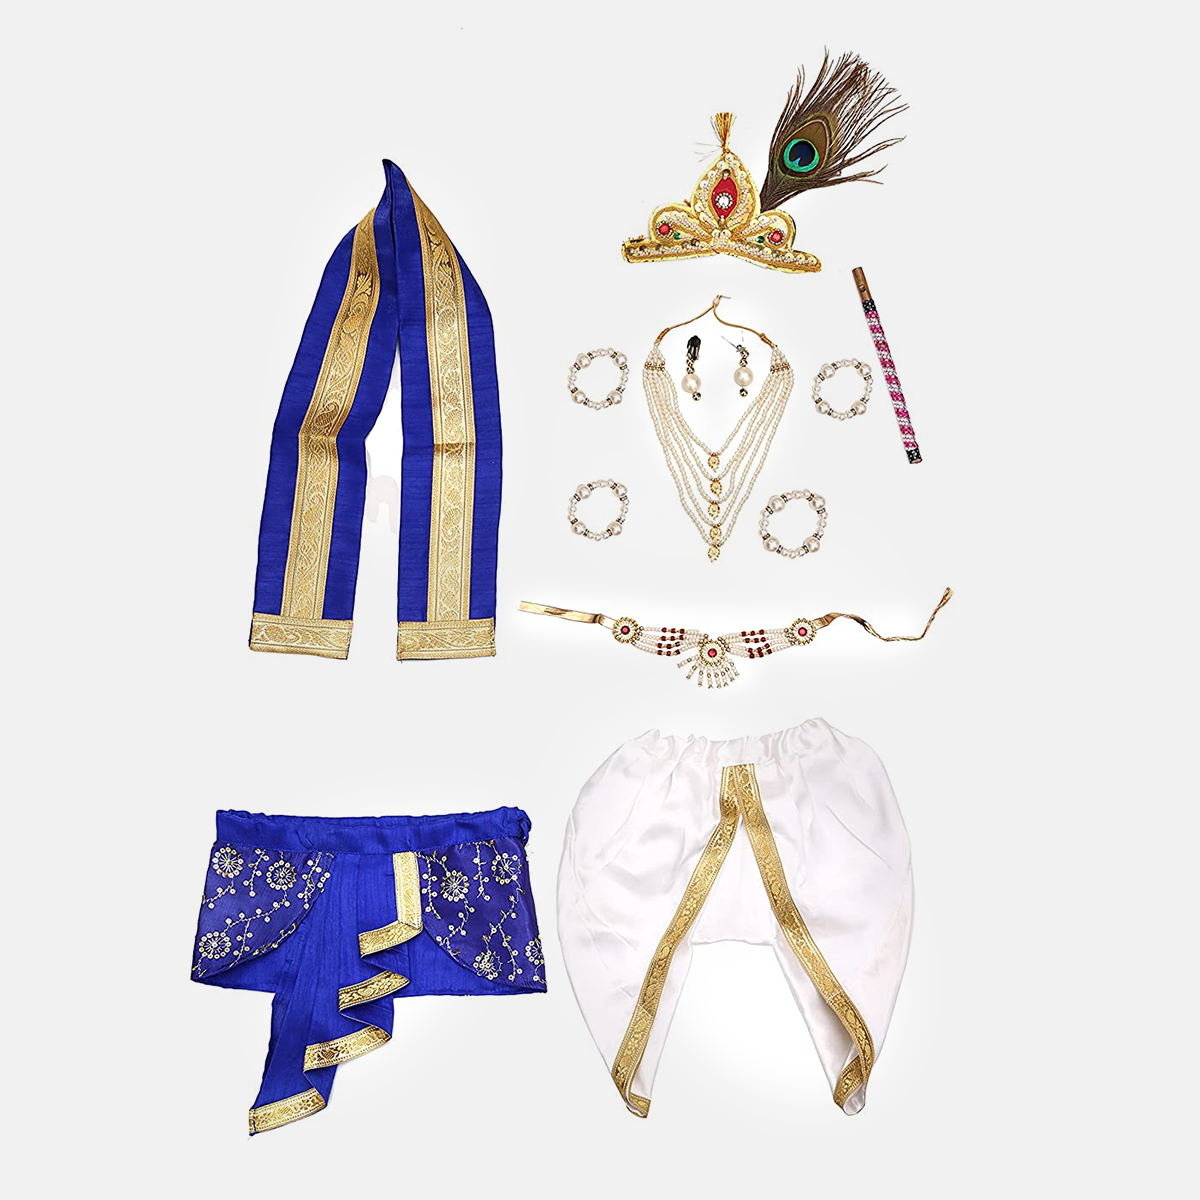 Baby Krishna Brocade Fabric Janmashtami Mythological Character Costume - White and Blue